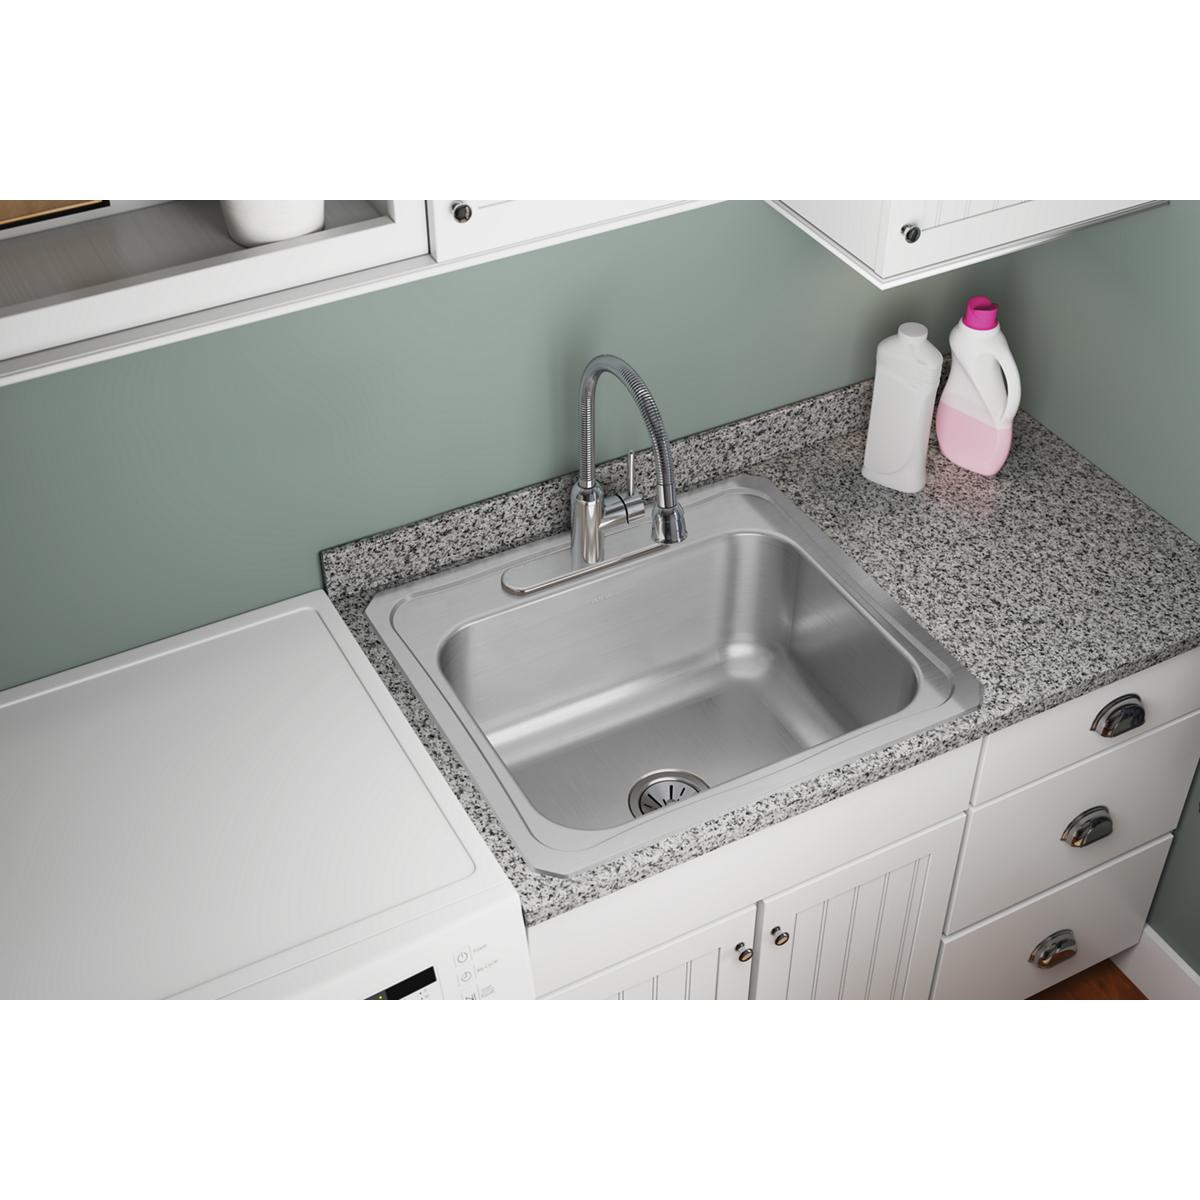 Elkay 25" x 22" x 10-1/4" Single Bowl Stainless Steel Drop-in Laundry Sink